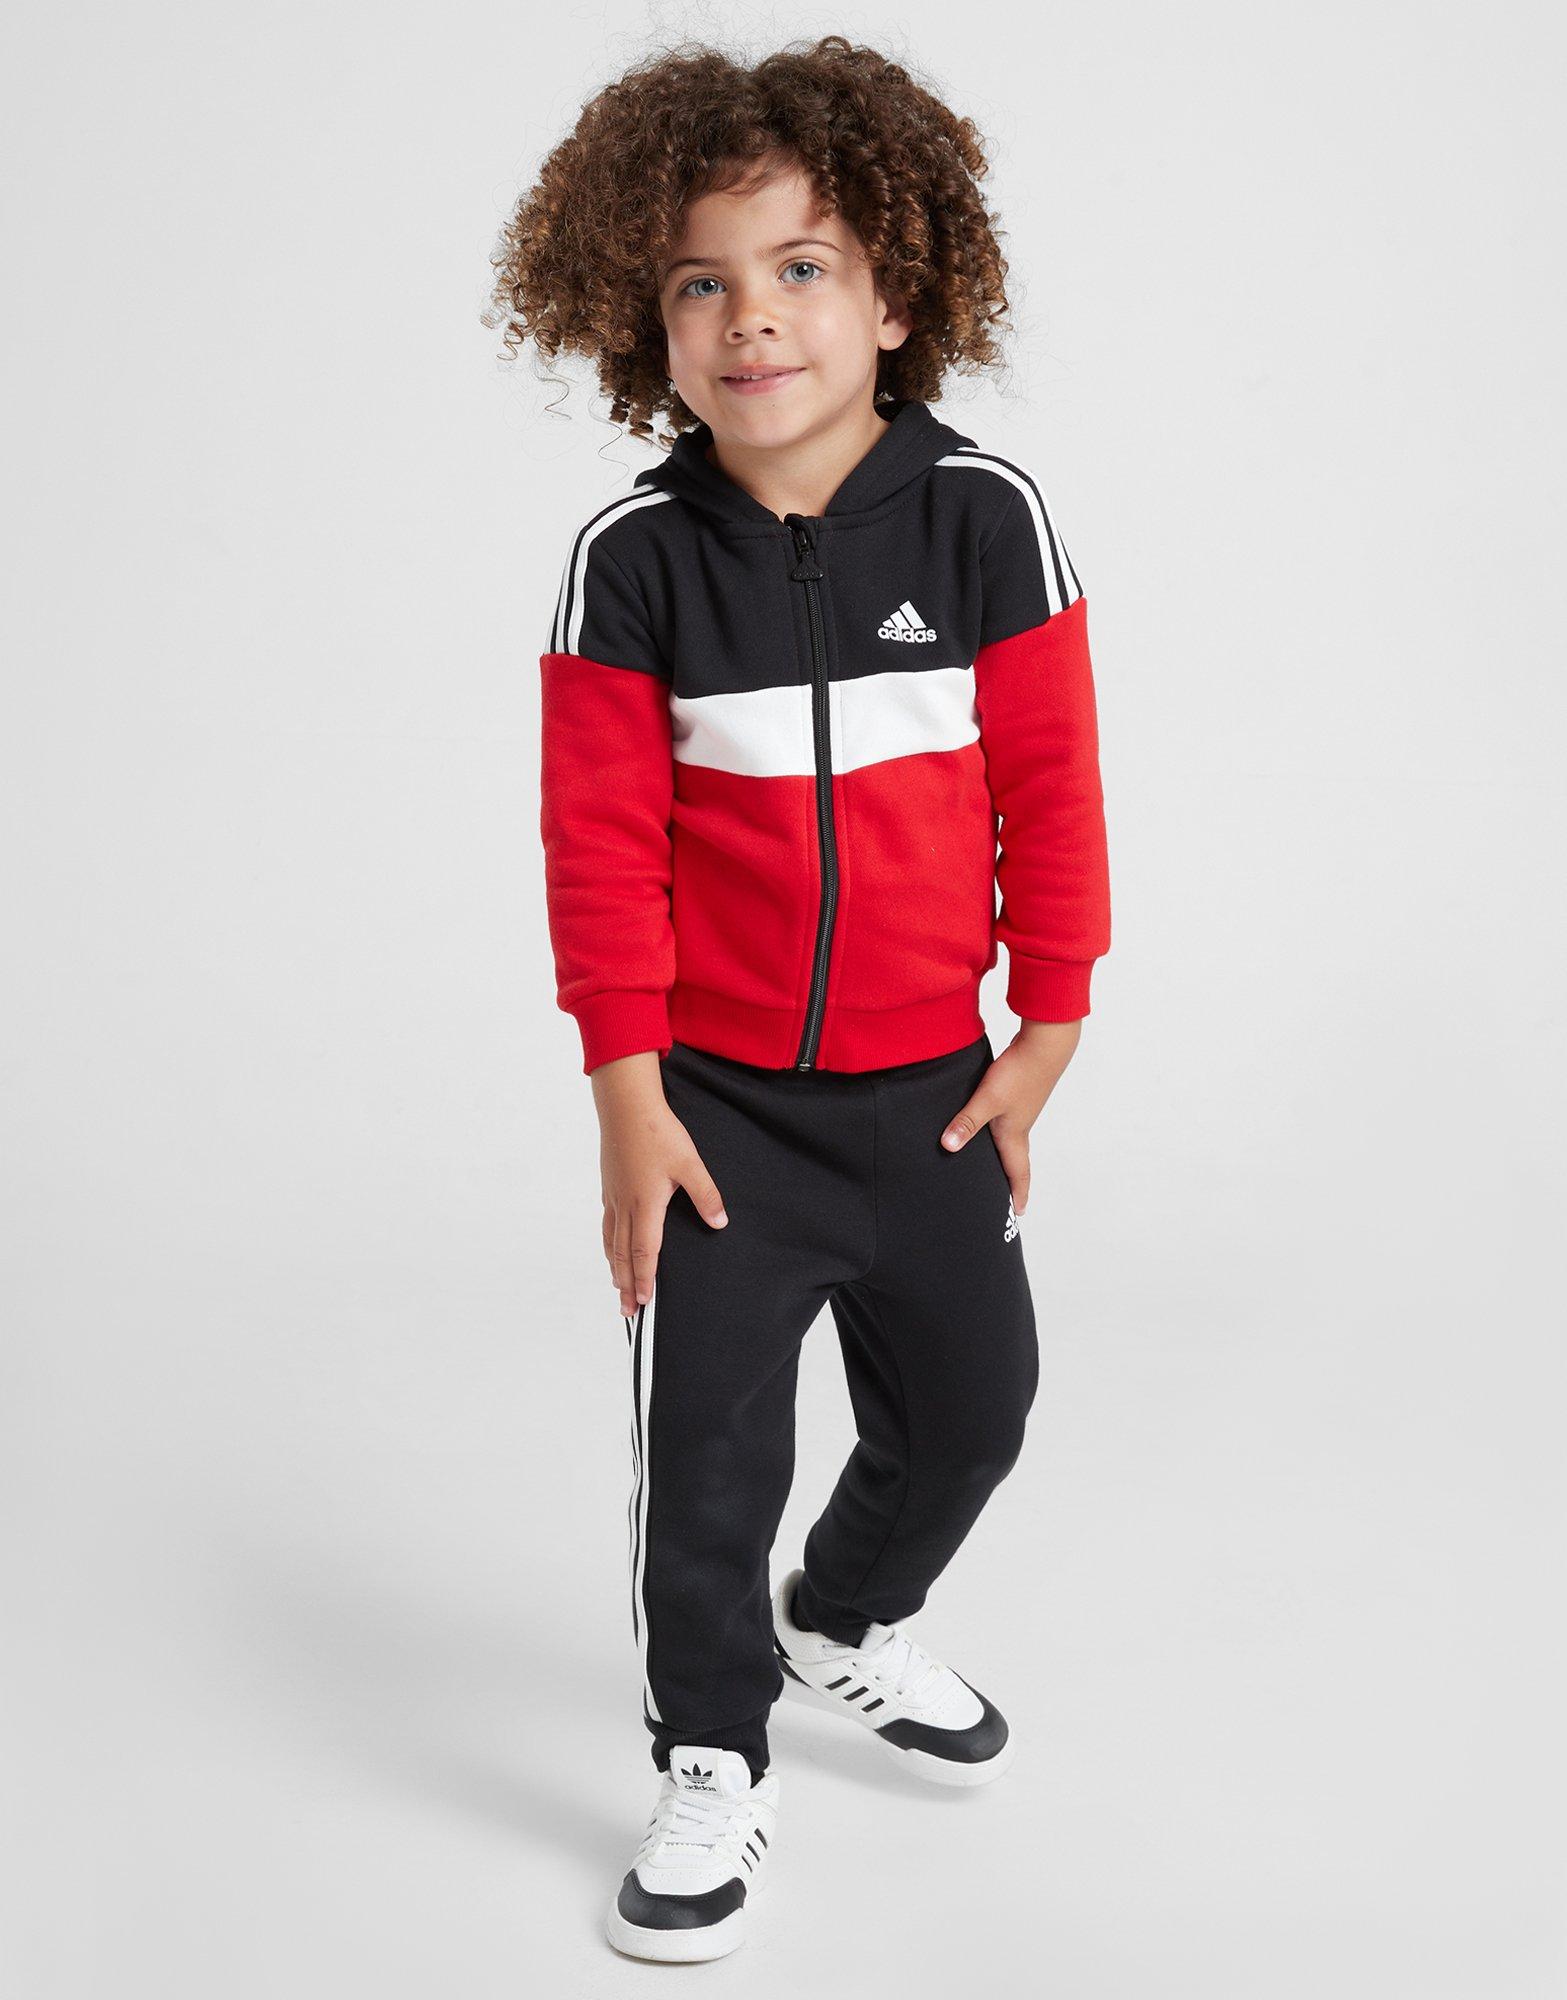 Schwarz - Deutschland 3-Streifen Colorblock Sports Kids Trainingsanzug Tiberio adidas JD